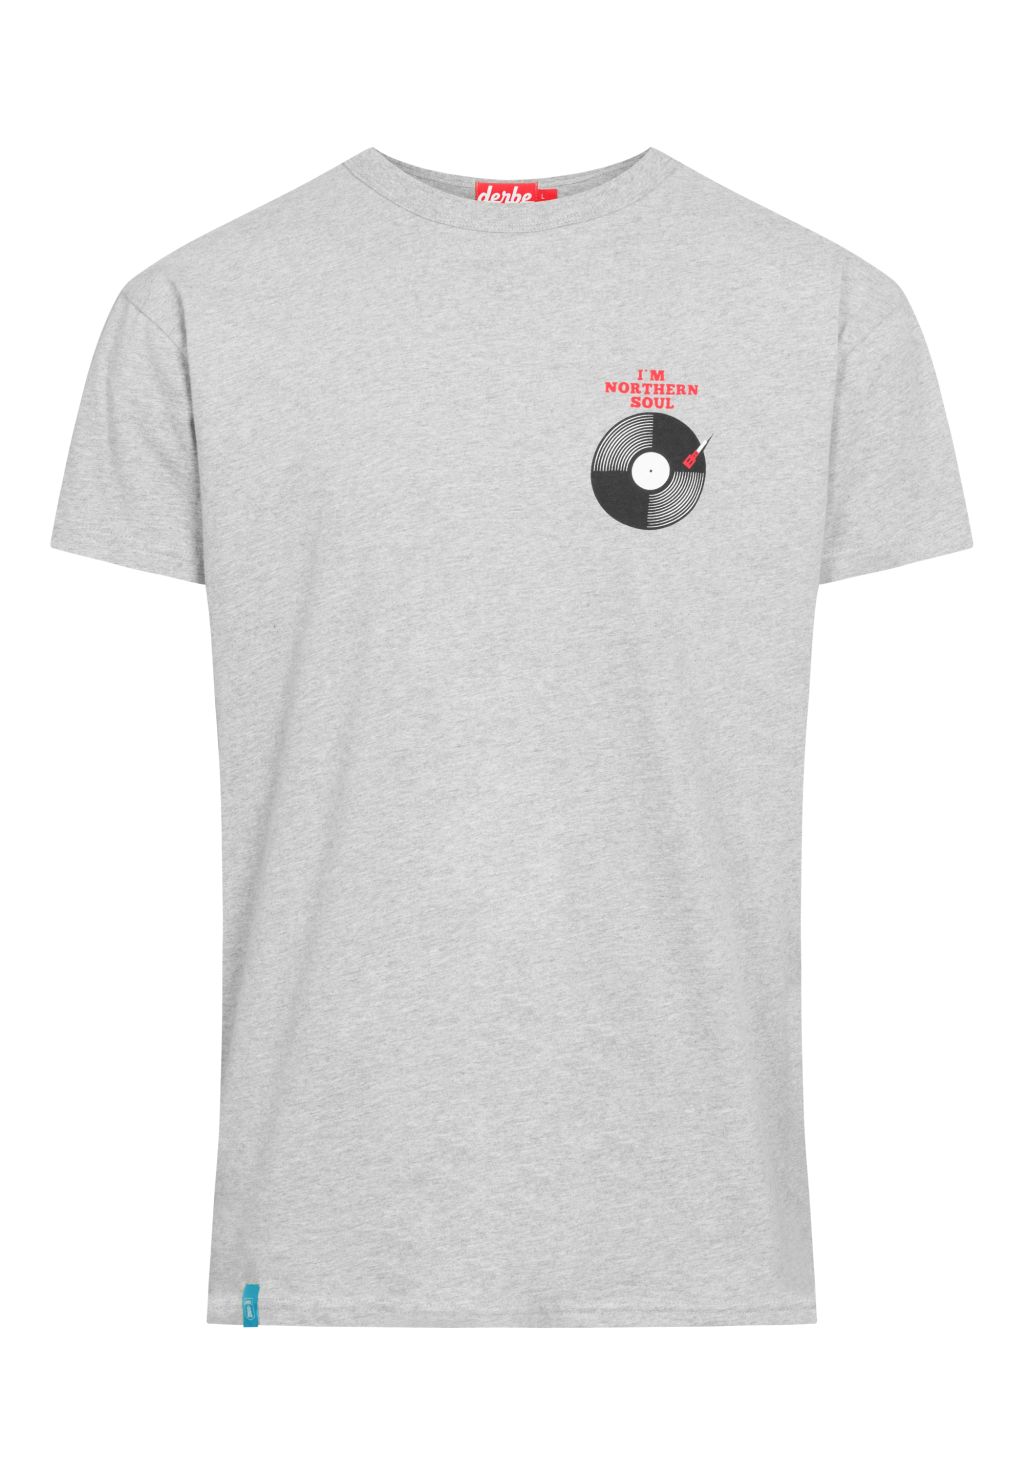 T-Shirt Northern Soul aus Bio-Baumwolle grey melange XL